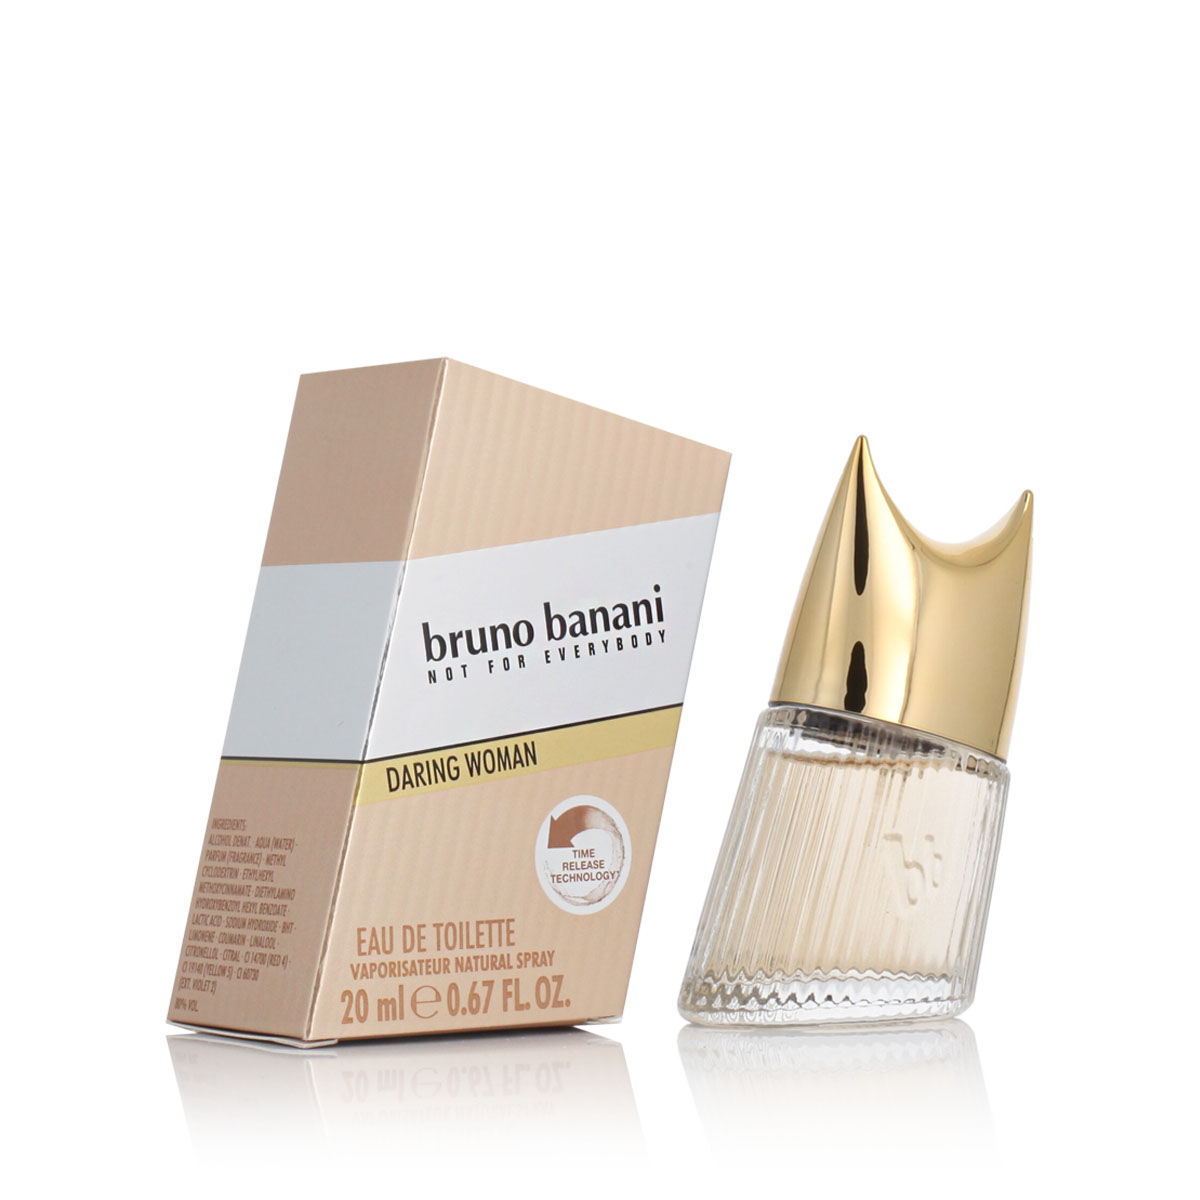 Parfum Femme Bruno Banani EDT Daring Woman 20 ml